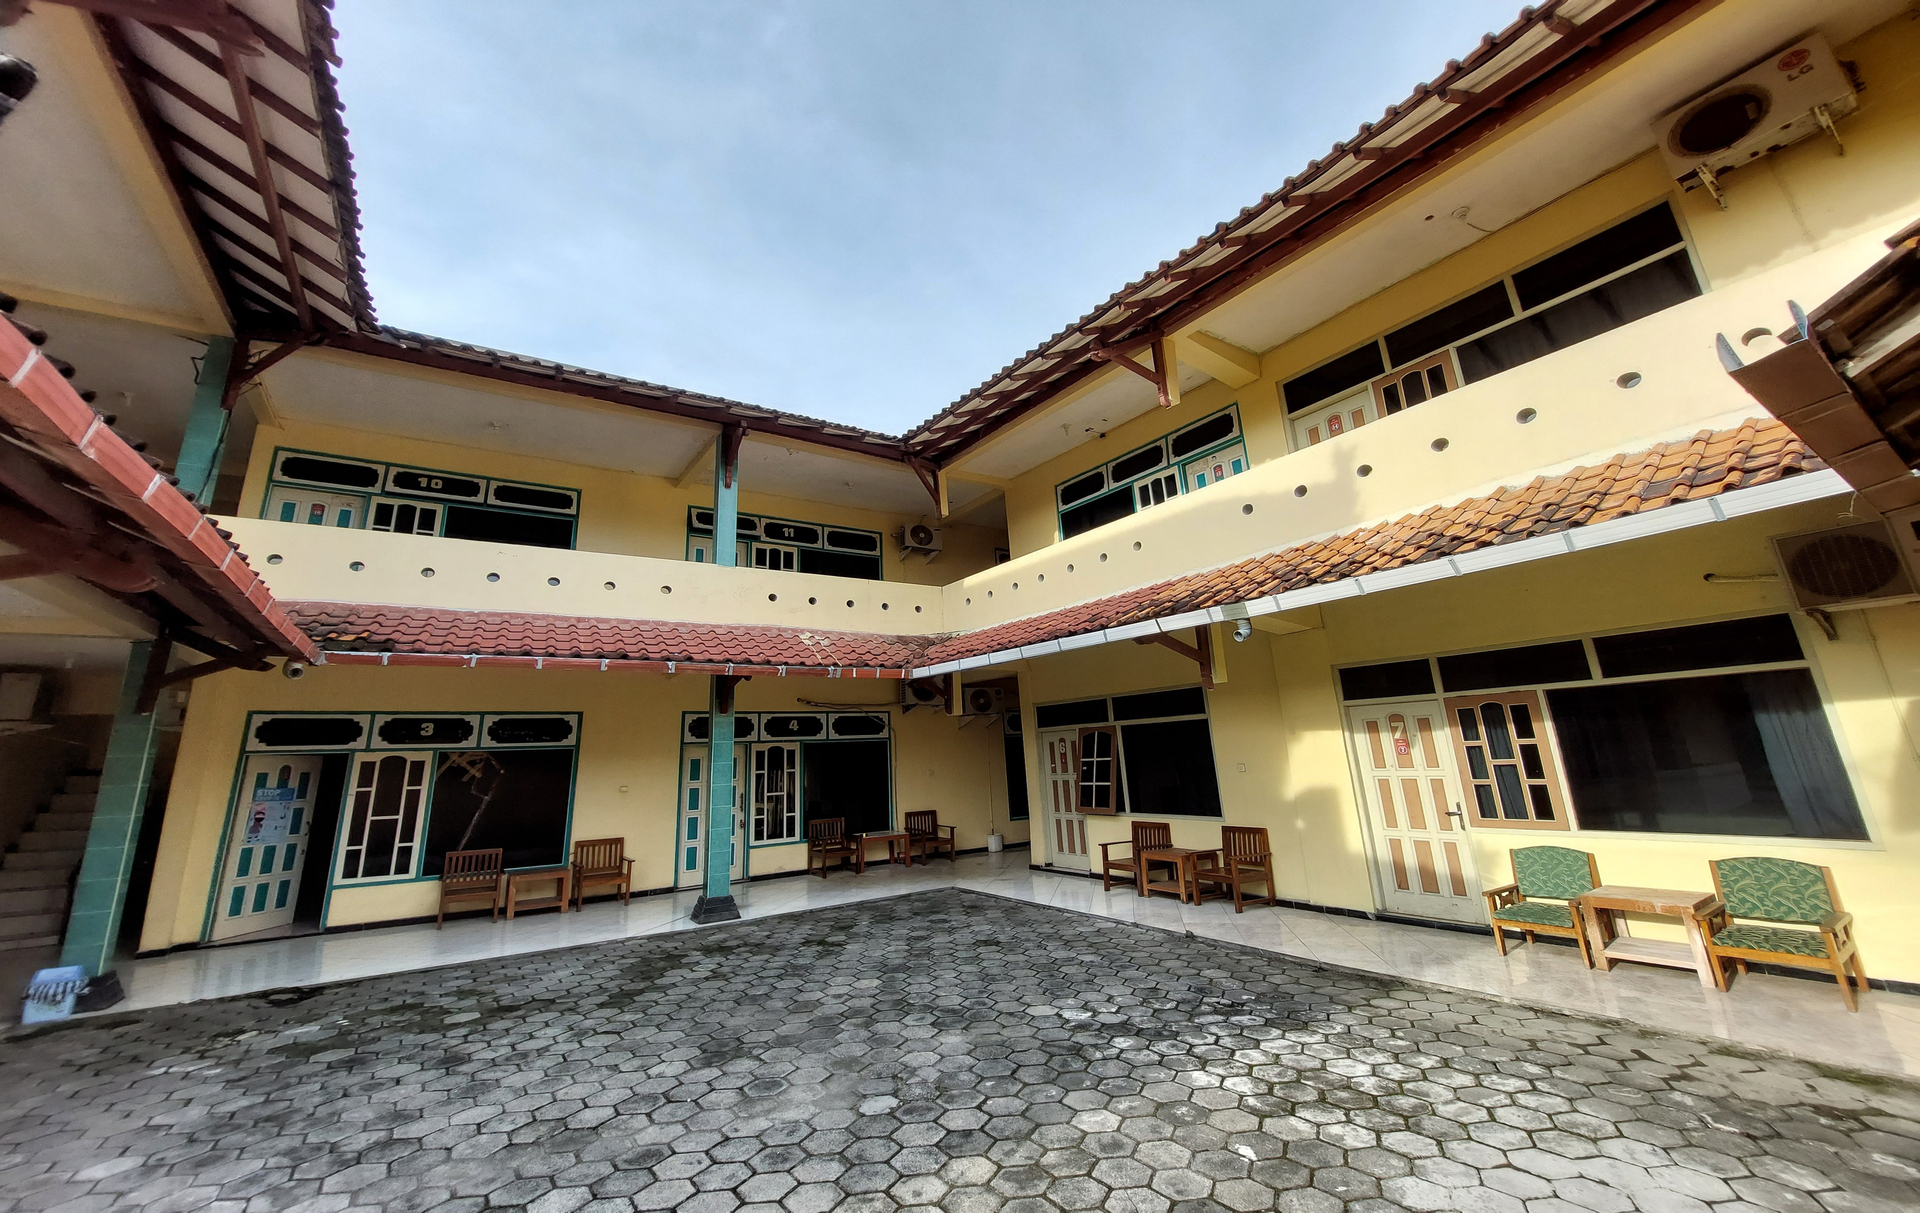 Exterior & Views 2, Hotel Parangtritis Widodo Tustiyani, Bantul